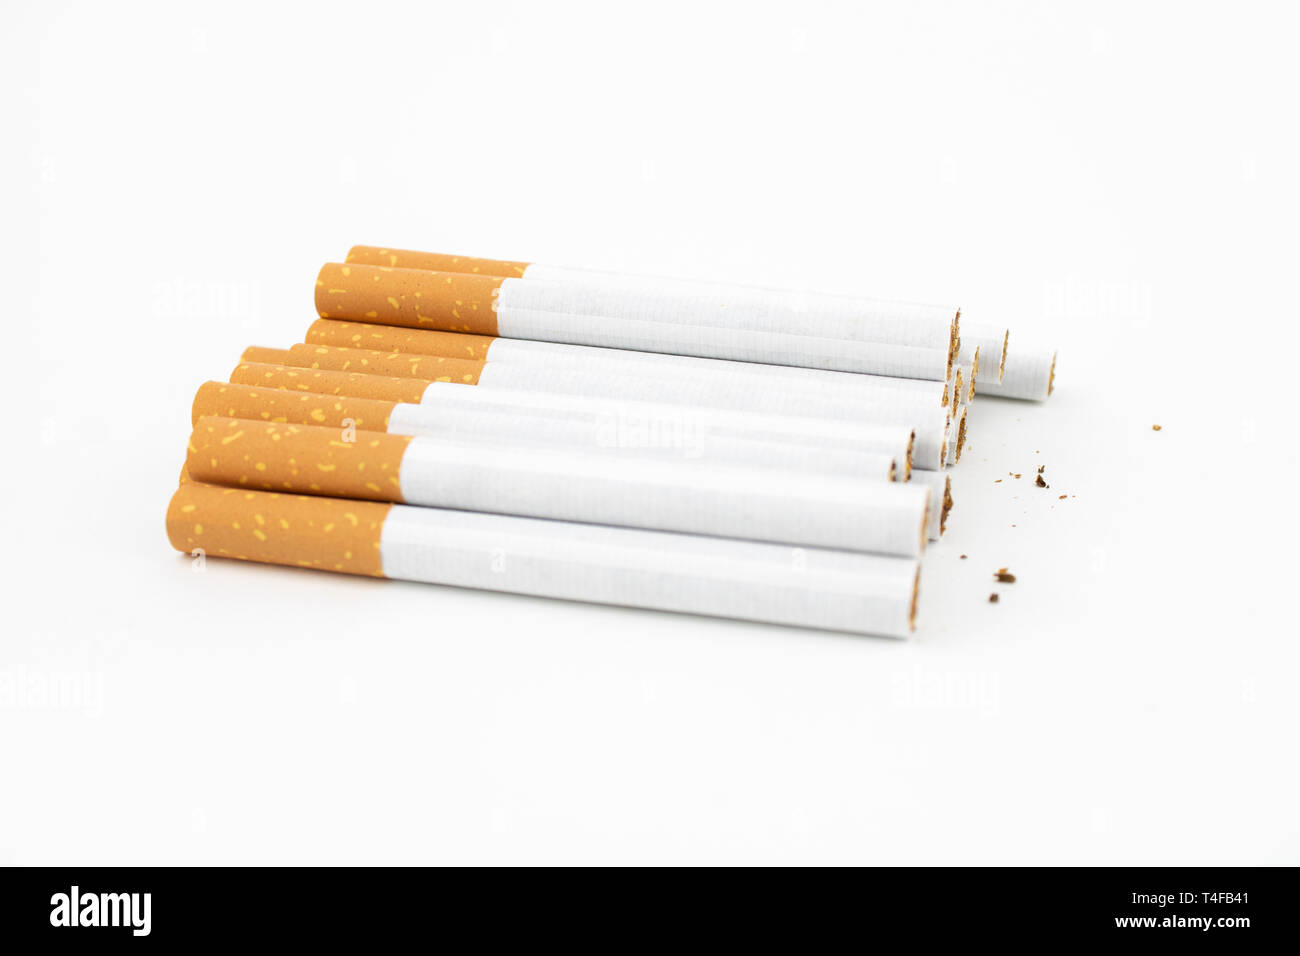 Diversi i sigari su sfondo bianco. Sigarette con filtro. Il tabacco può causare numerosi danni per l'organismo. Foto Stock